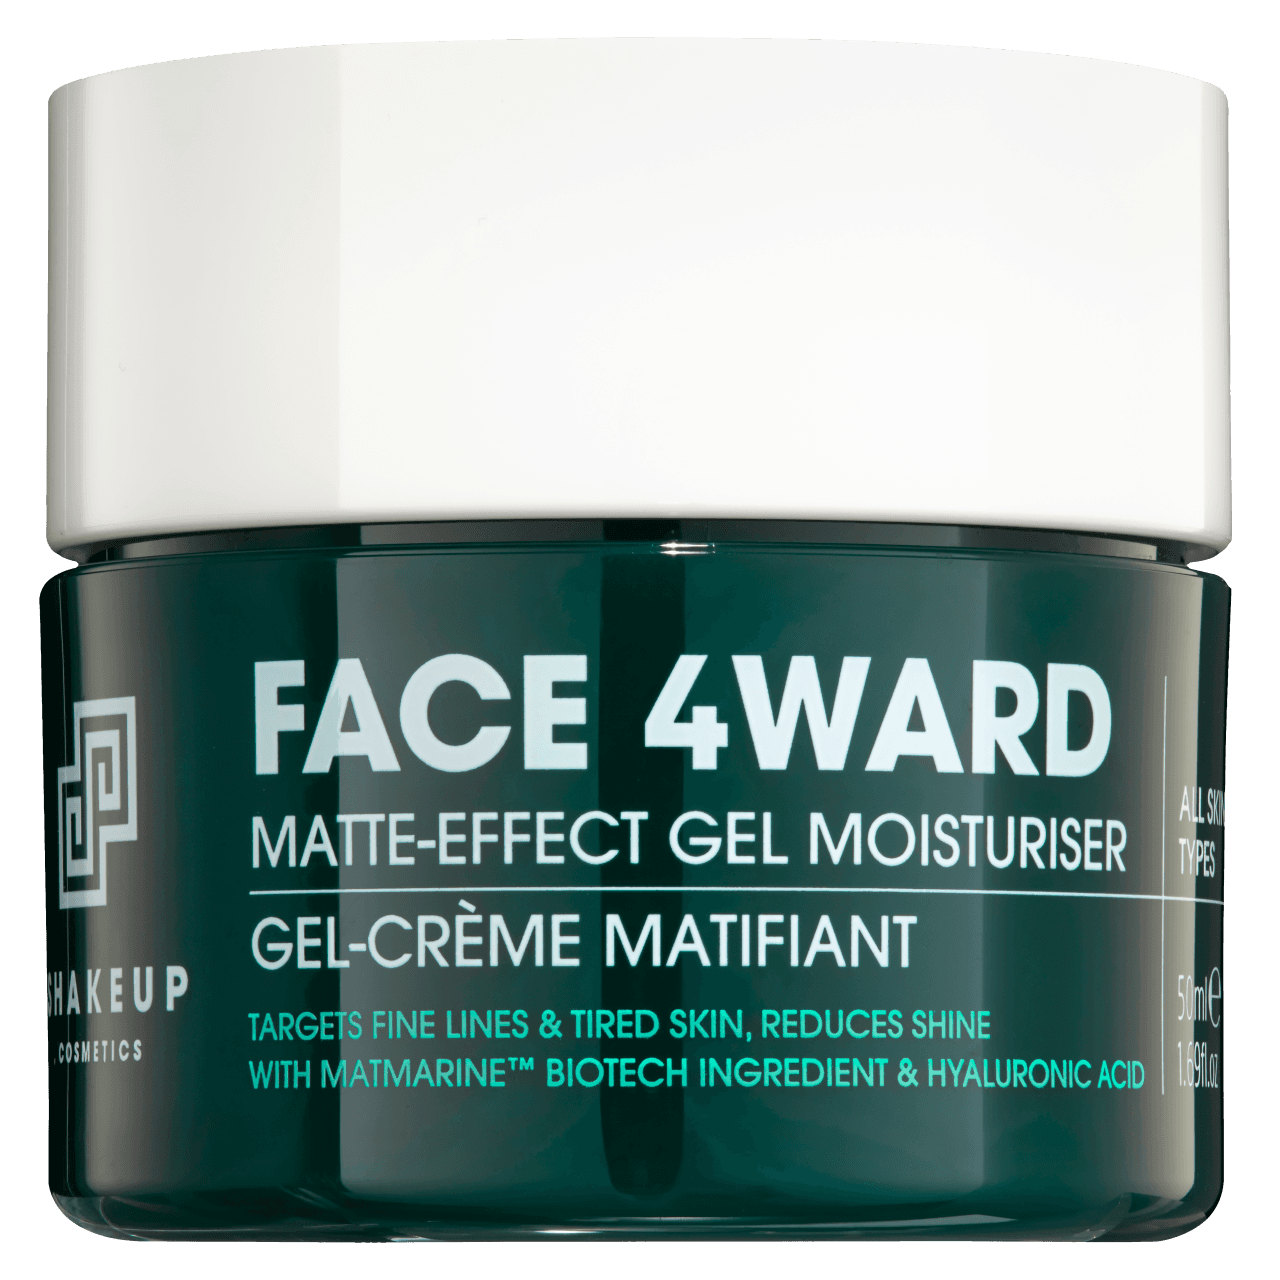 Face 4ward - FACE 4WARD - MATTE-EFFECT GEL MOISTURISER